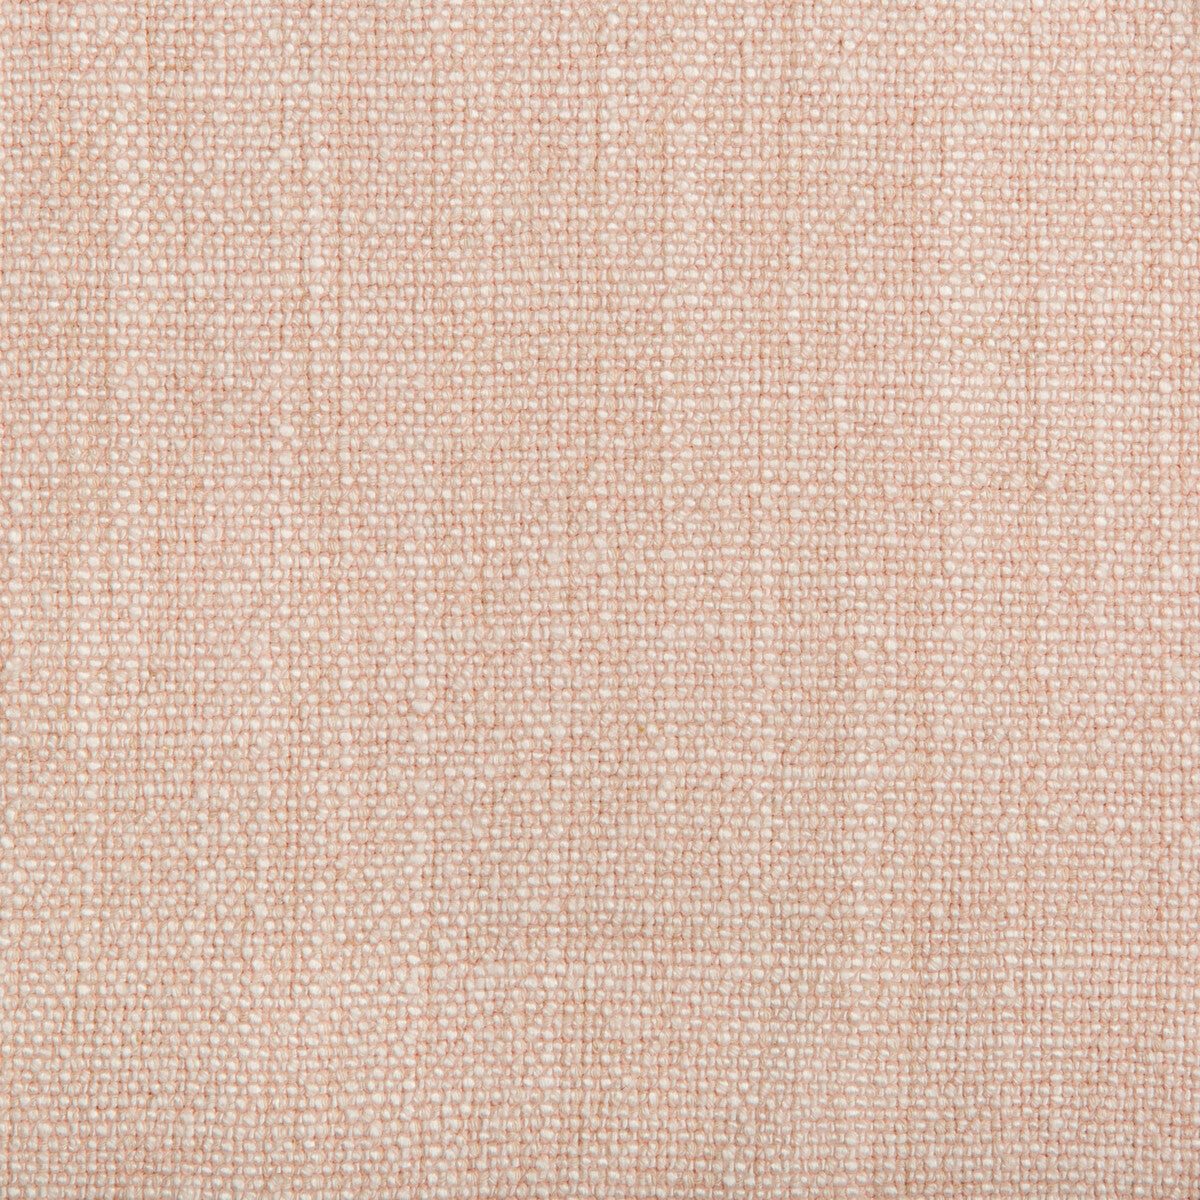 Kravet Basics fabric in 35189-117 color - pattern 35189.117.0 - by Kravet Basics